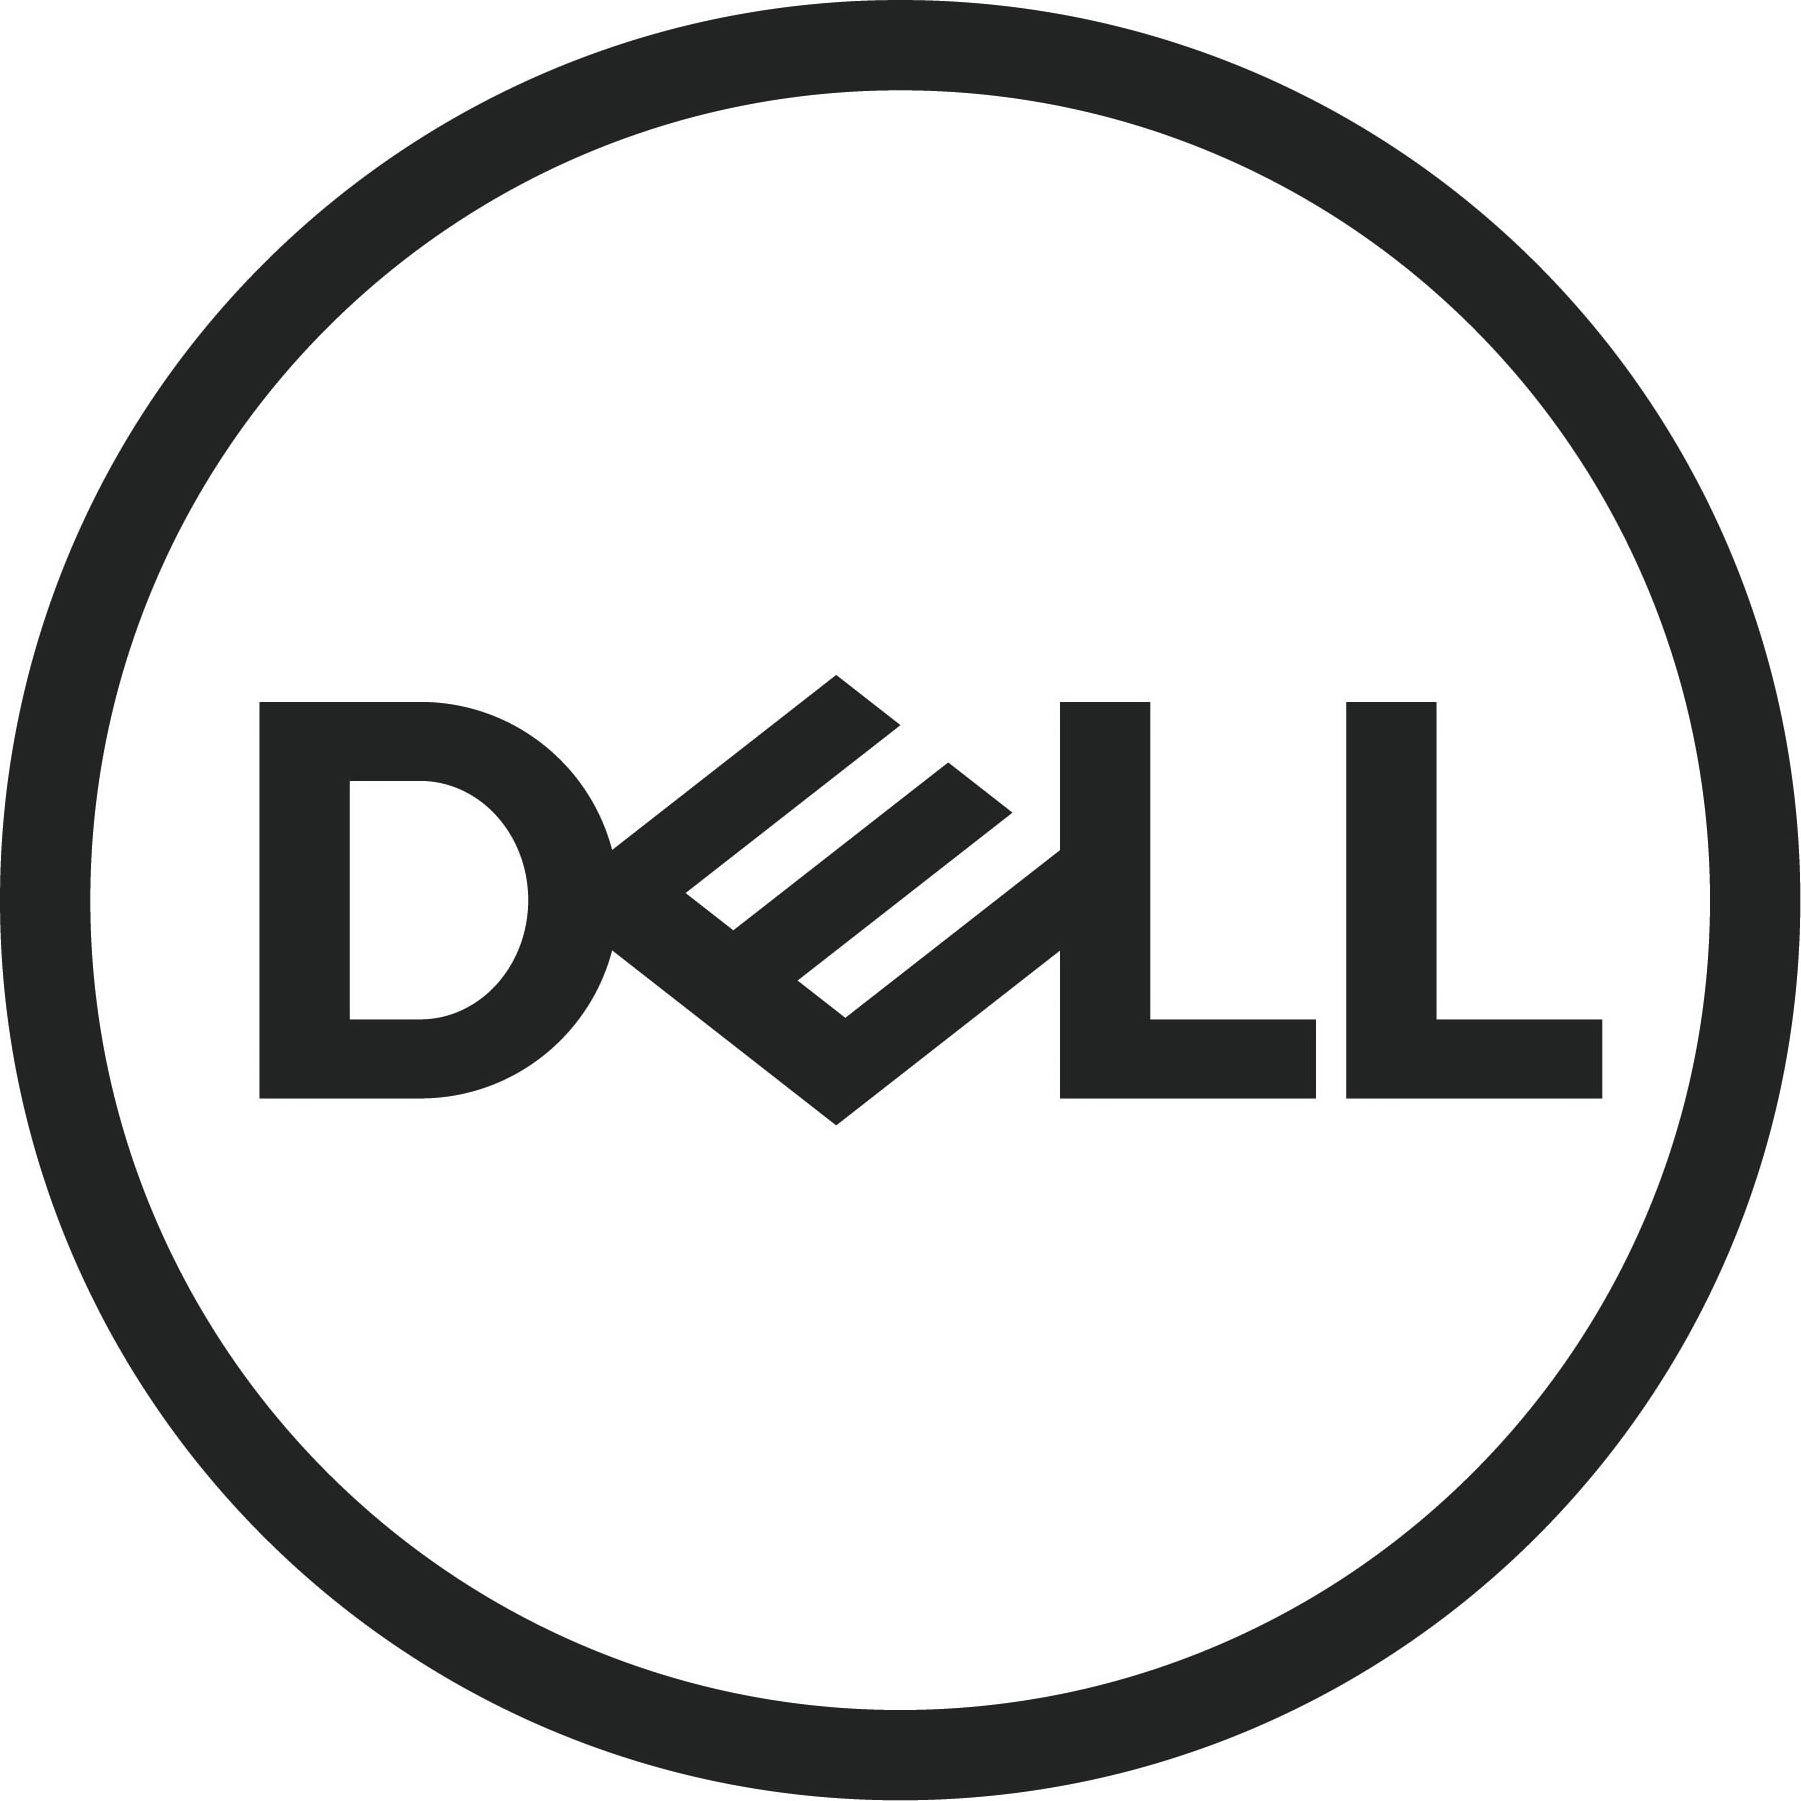 Trademark Logo DELL